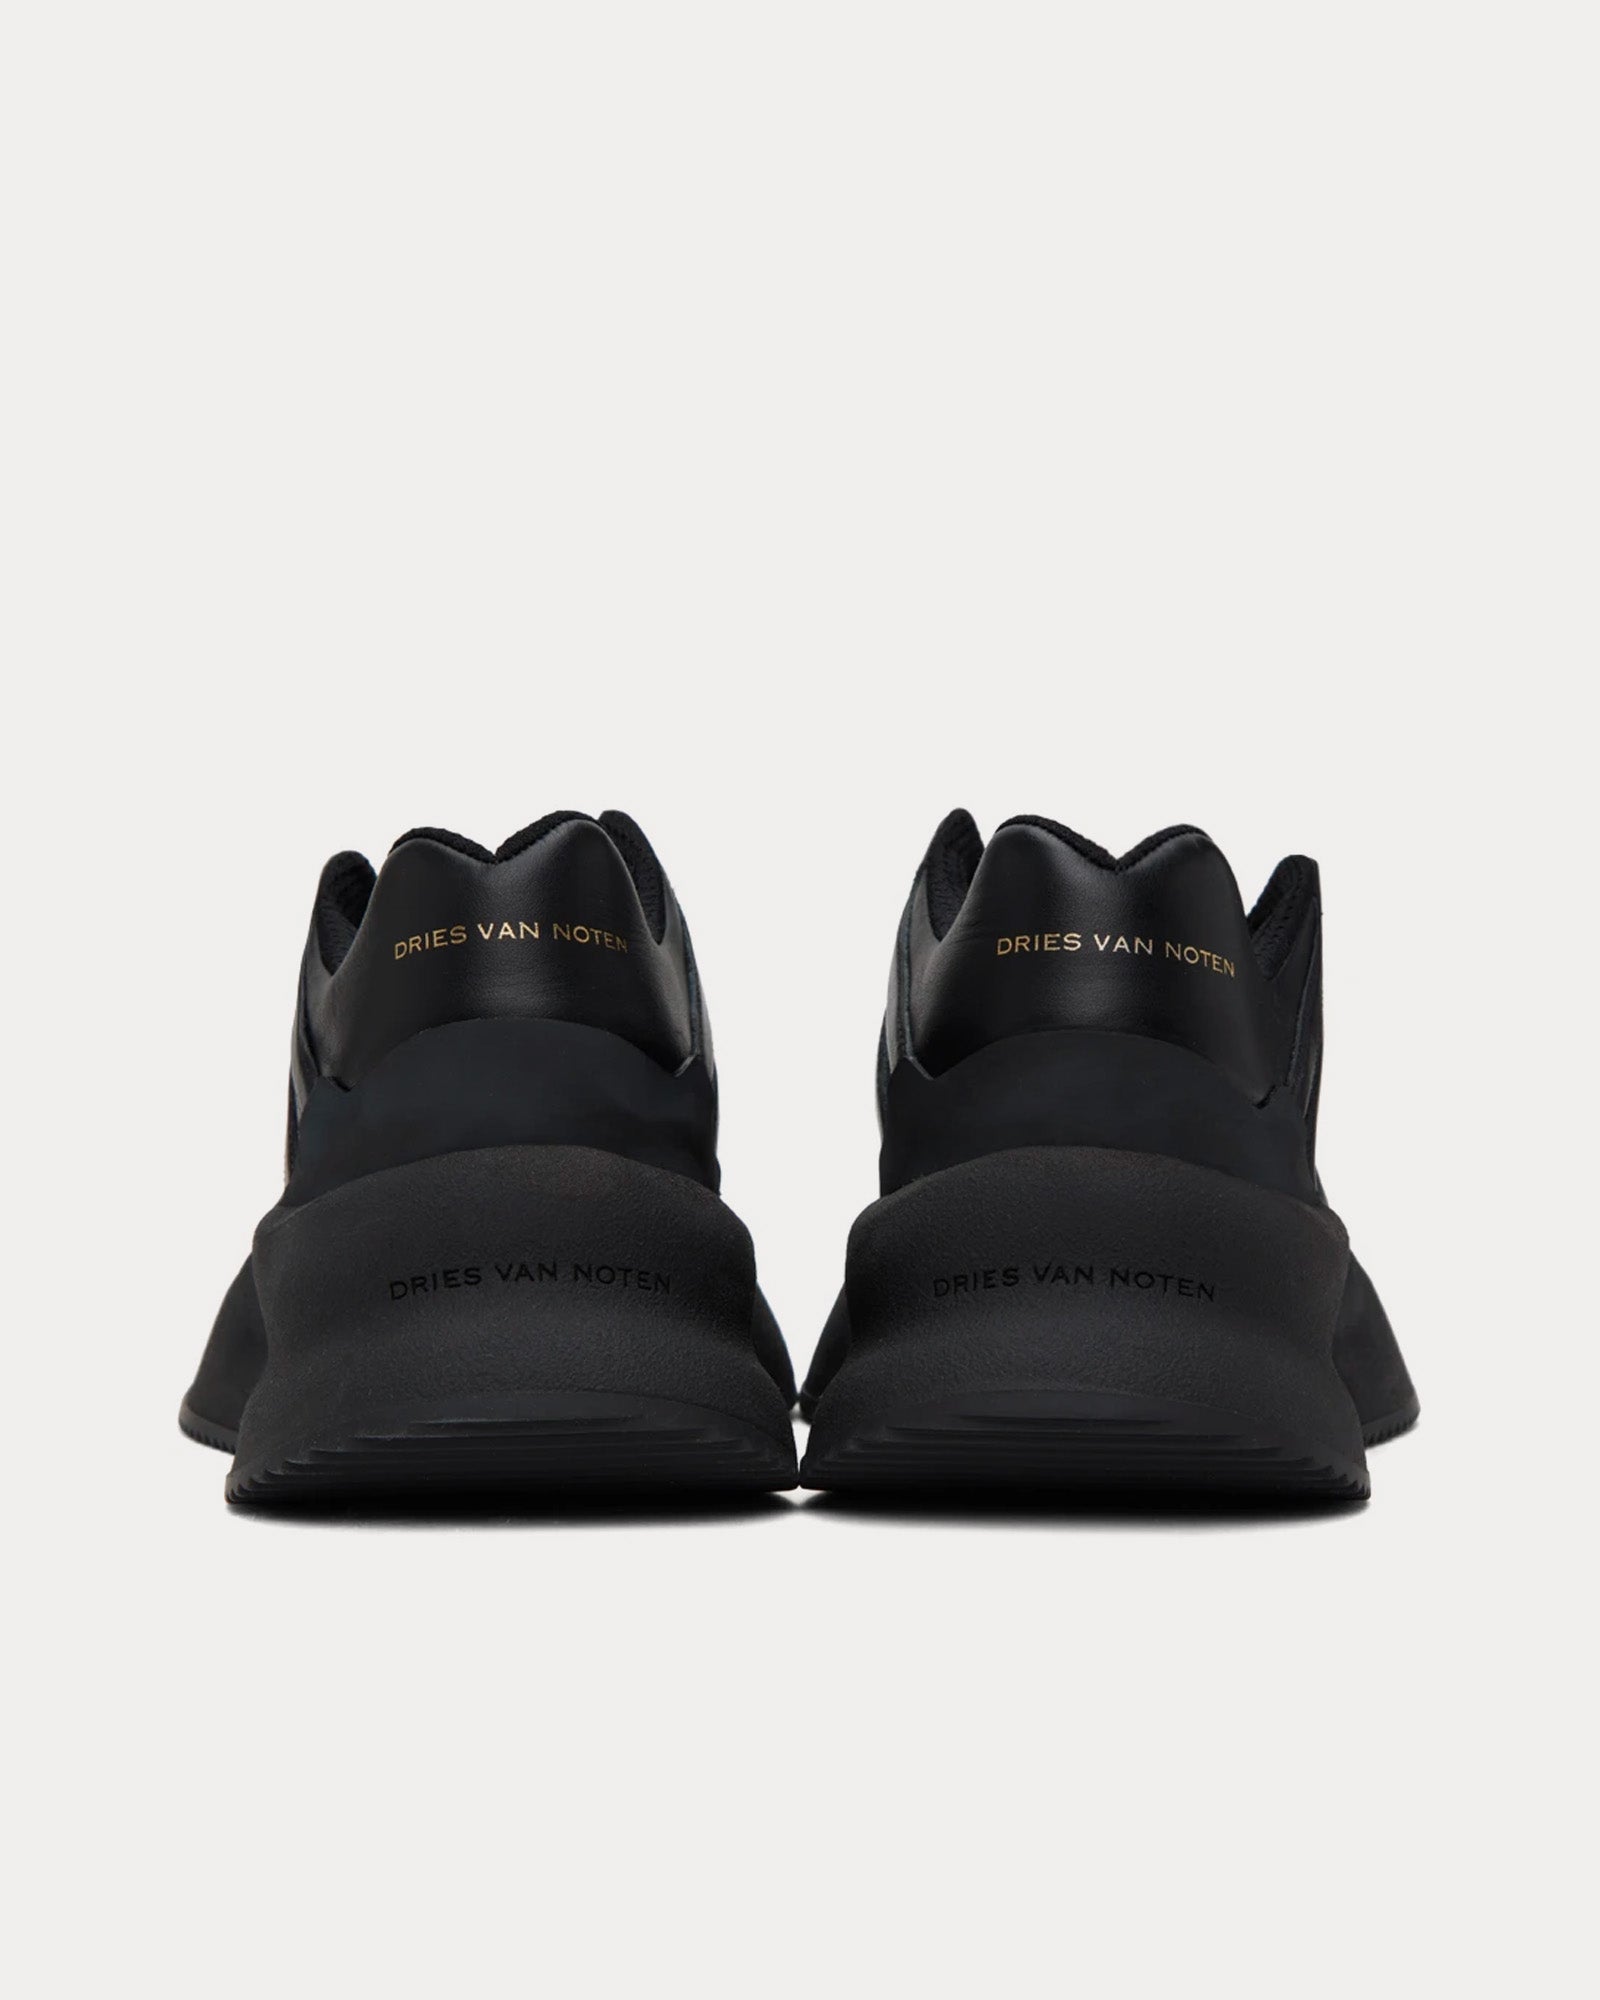 Dries Van Noten - Oversized Leather Black Low Top Sneakers